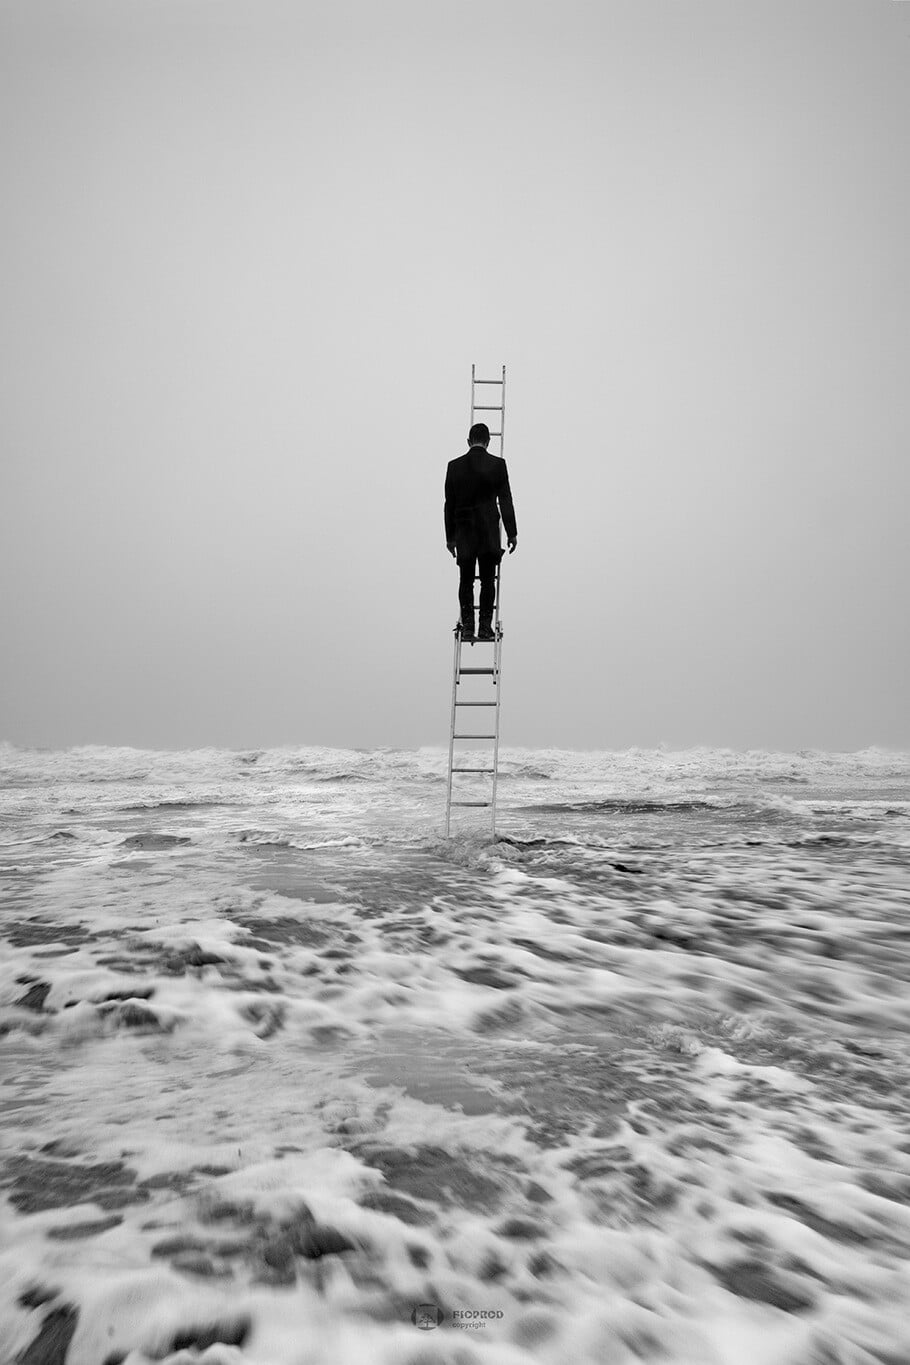 Escape-17.-Un-homme-au-sommet-dune-echelle-au-milieu-de-la-mer-en-tempete.-une-photo-artistique-.Boulogne-sur-mer-florent-philippe.jpg